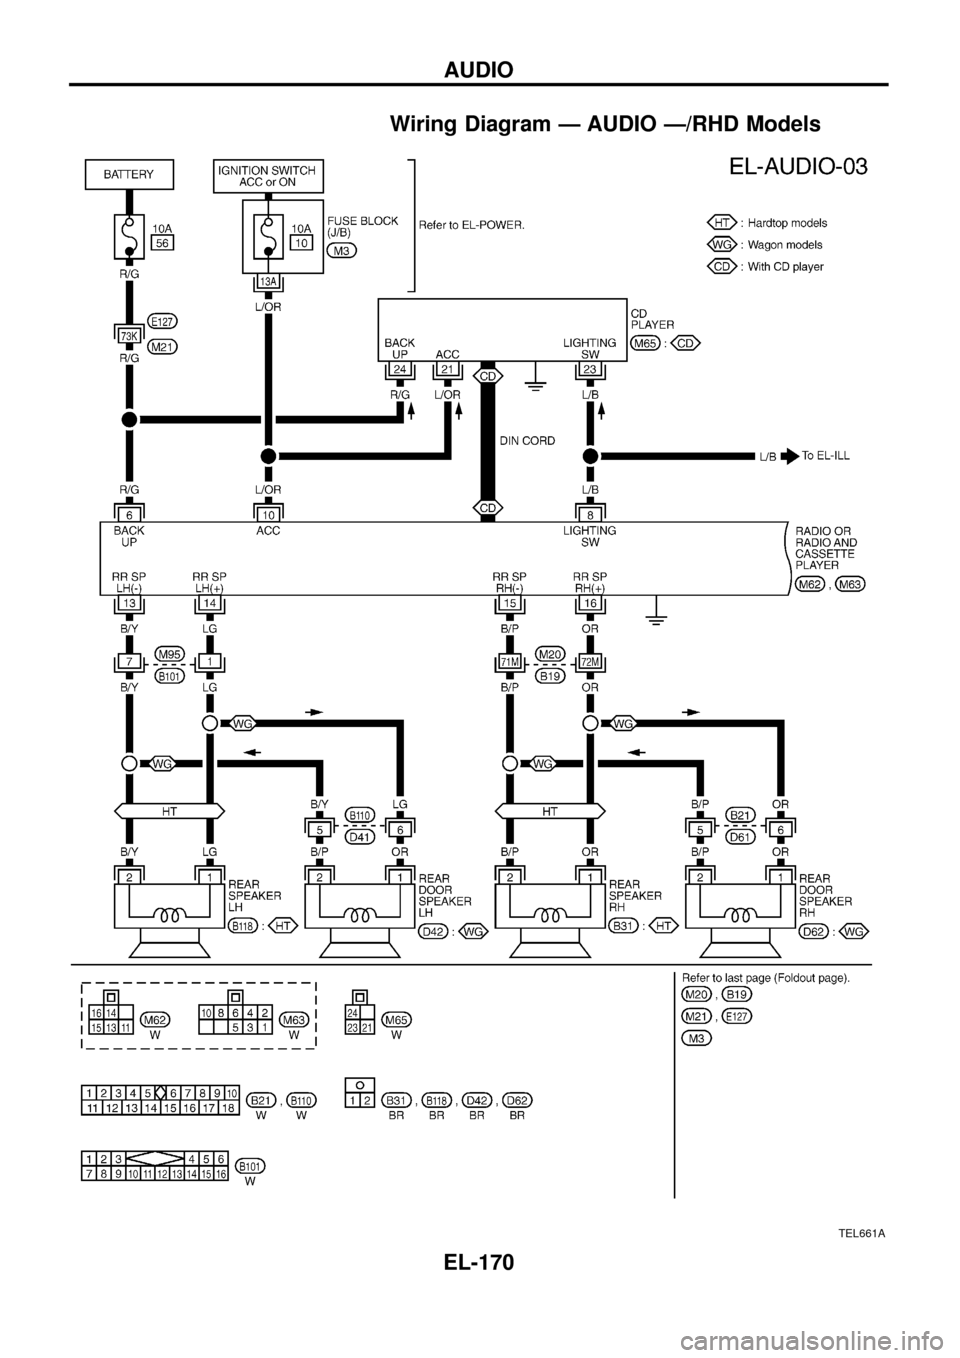 NISSAN PATROL 1998 Y61 / 5.G Electrical System Workshop Manual Wiring Diagram Ð AUDIO Ð/RHD Models
TEL661A
AUDIO
EL-170 